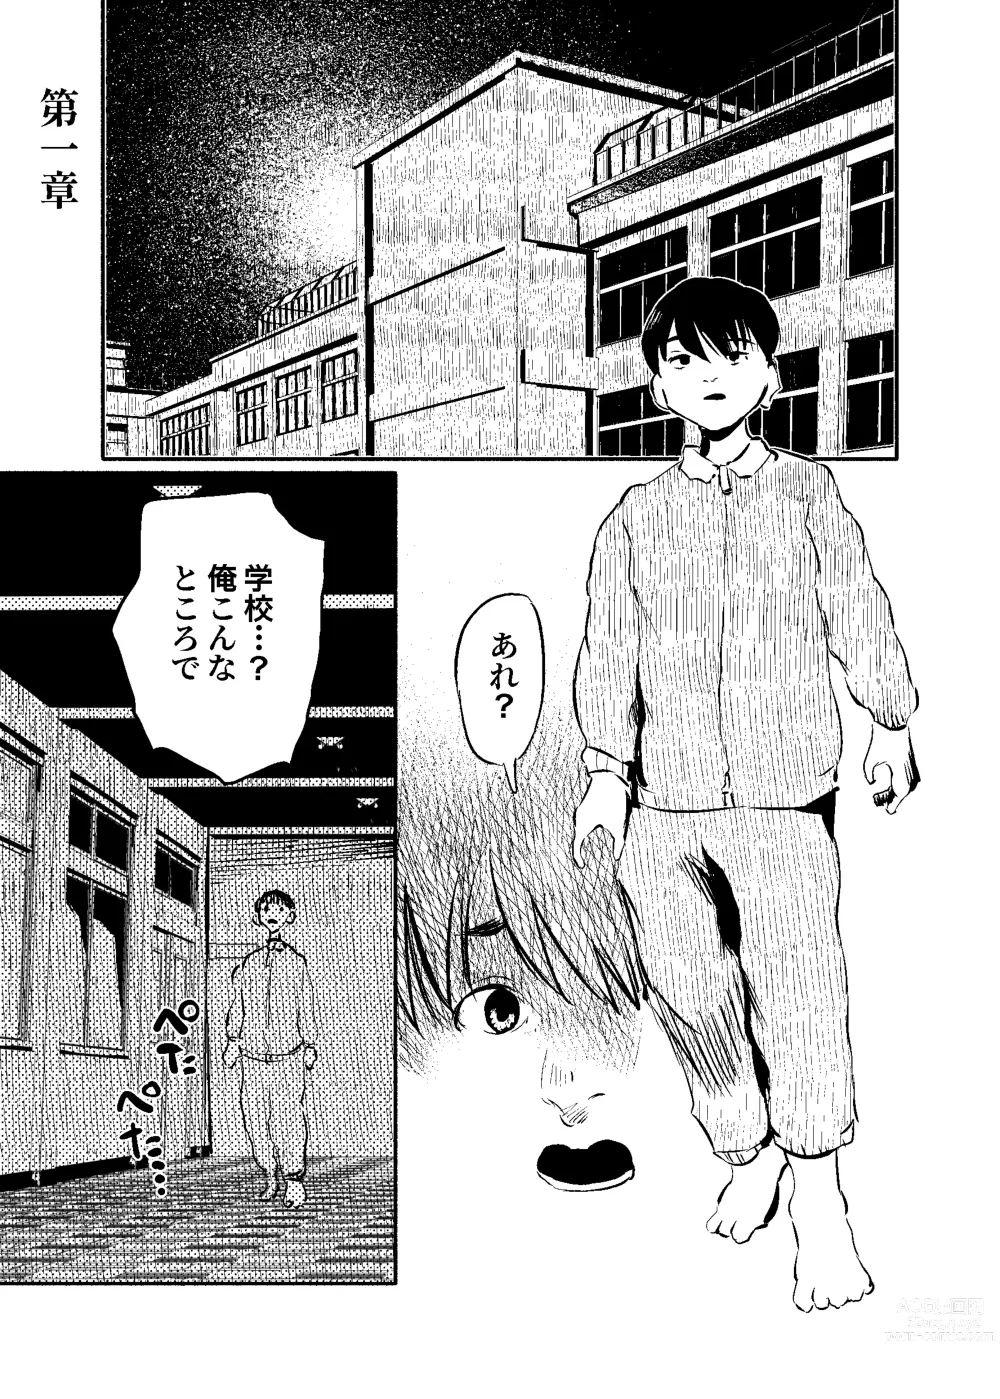 Page 3 of doujinshi Youko Ayako